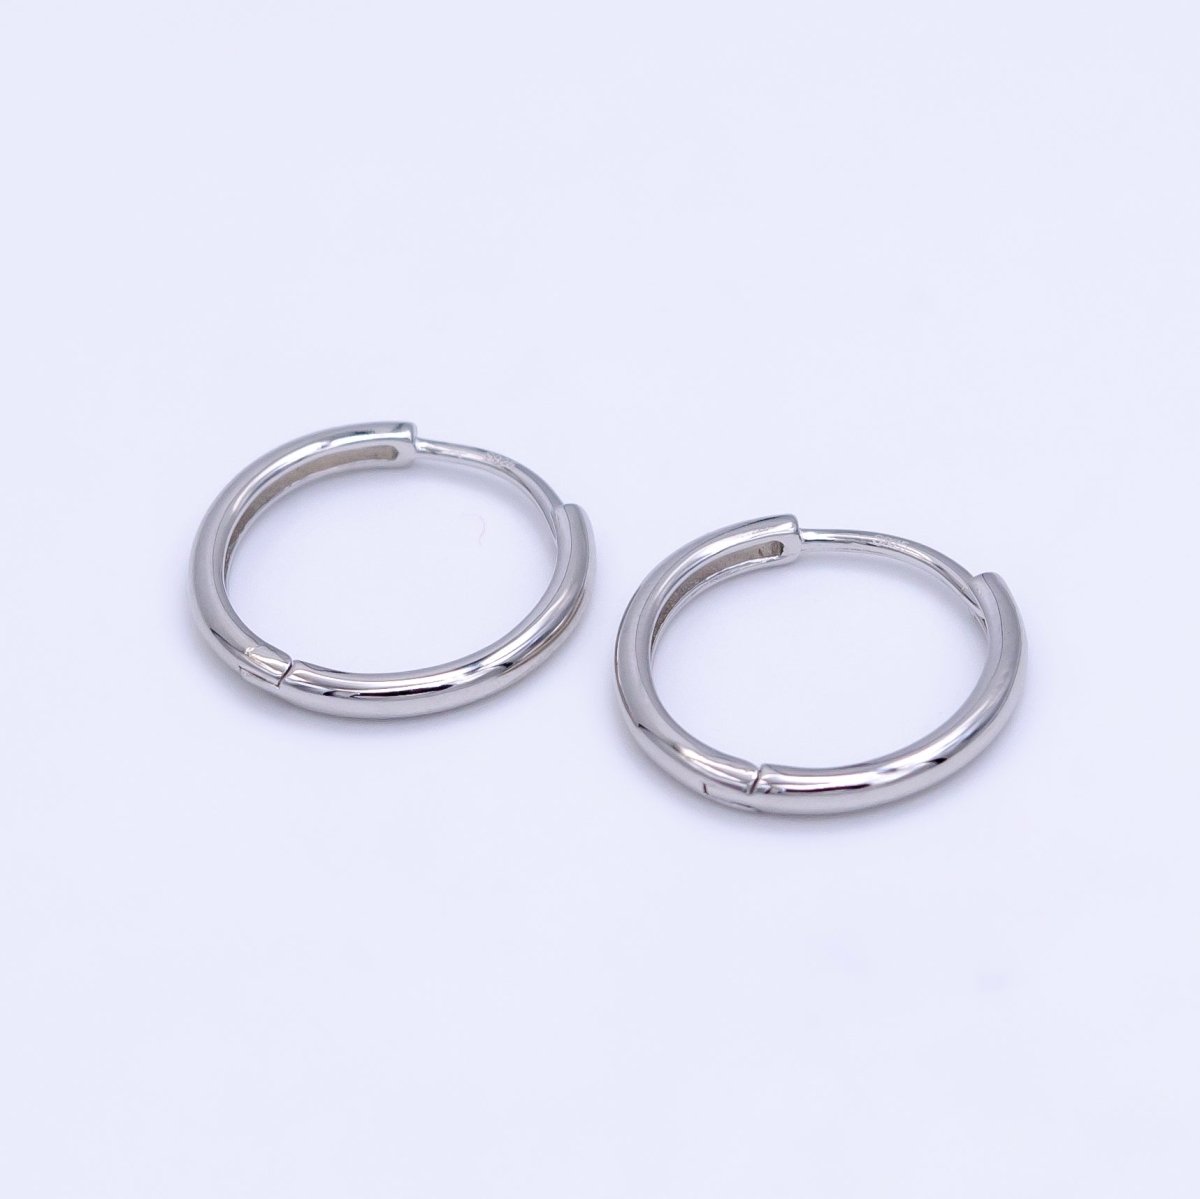 S925 Sterling Silver 16mm Minimalist Huggie Earrings | SL-495 - DLUXCA